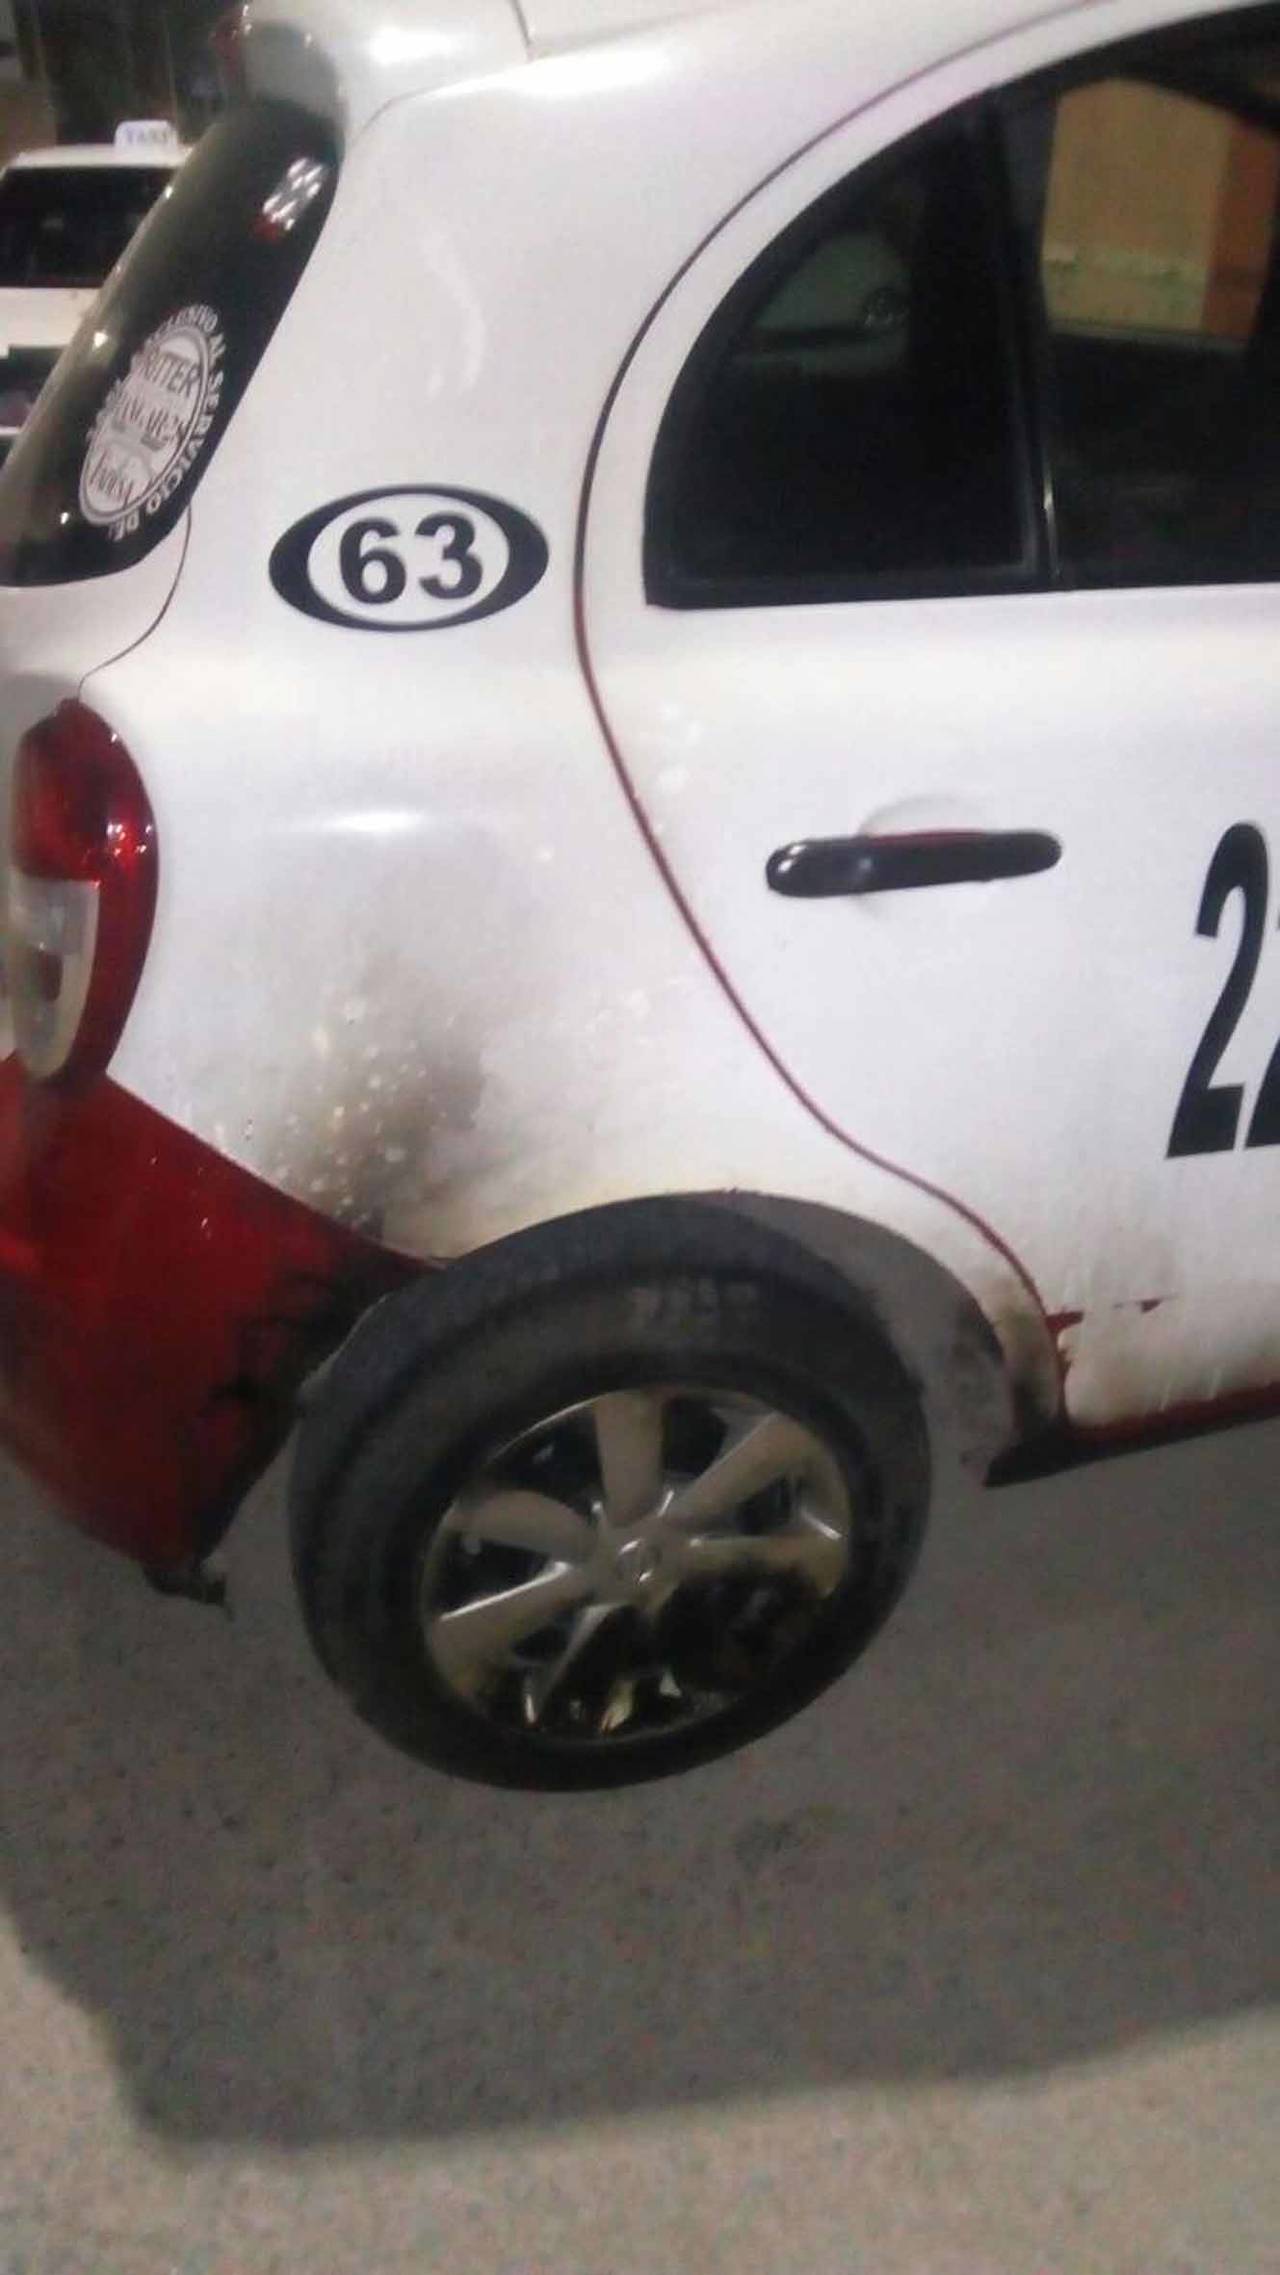 Detenido. El agresor lanzó una bomba molotov al taxi de uno de sus compañeros, con el que tenía viejas rencillas. 